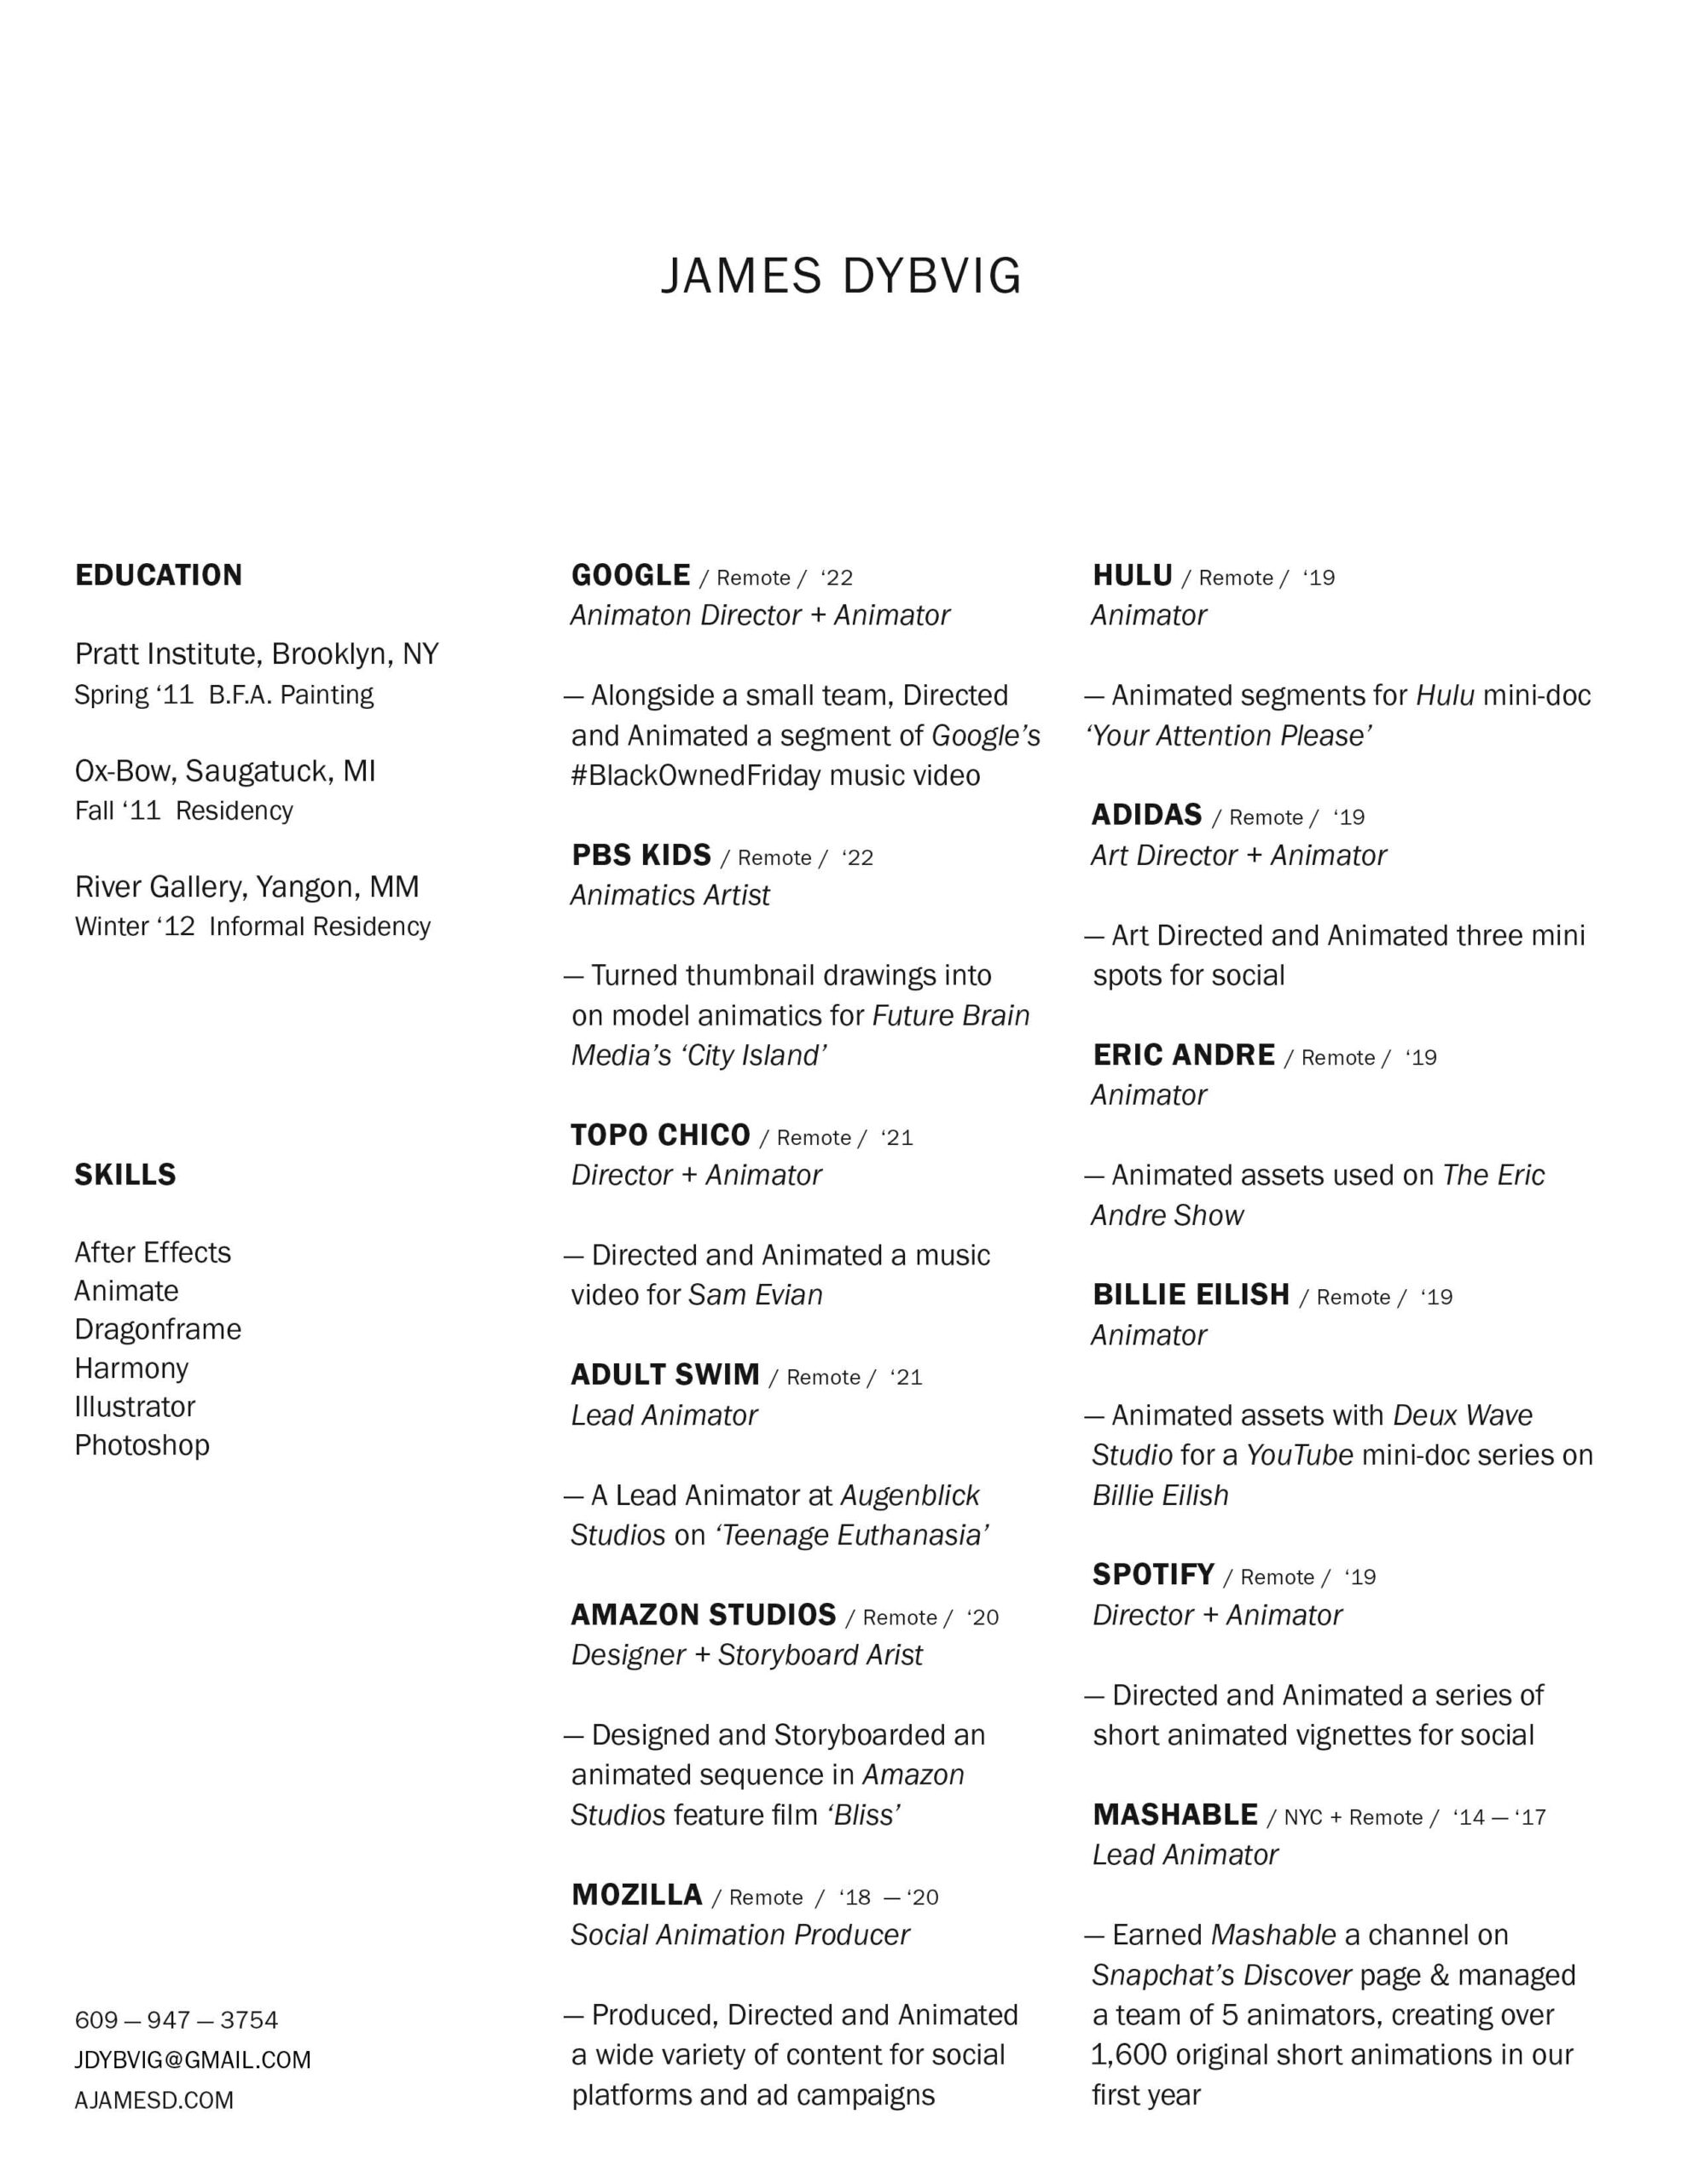 James_Dybvig_Resume_22